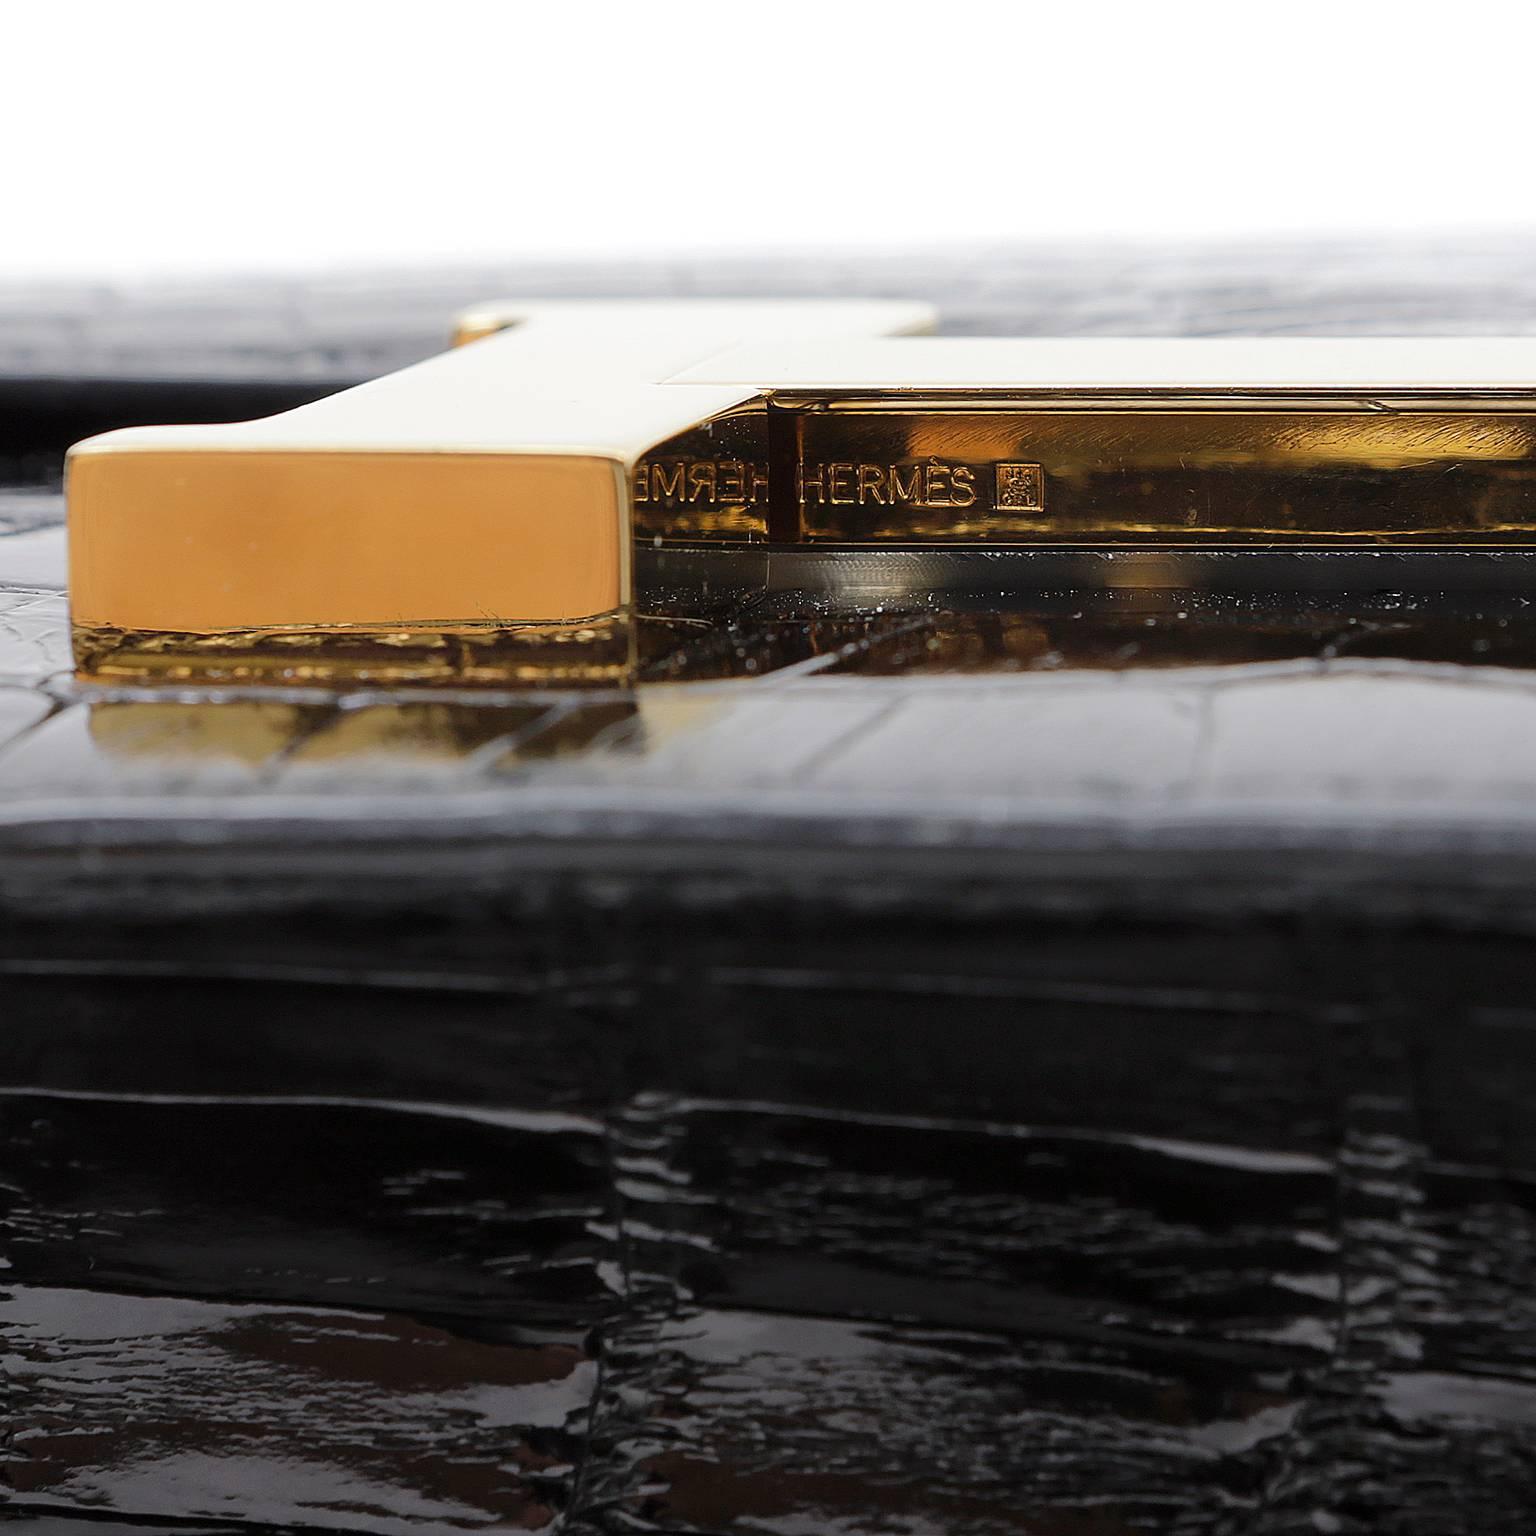 Hermès Black Alligator Constance Bag- 23 cm with Gold Hardware 2